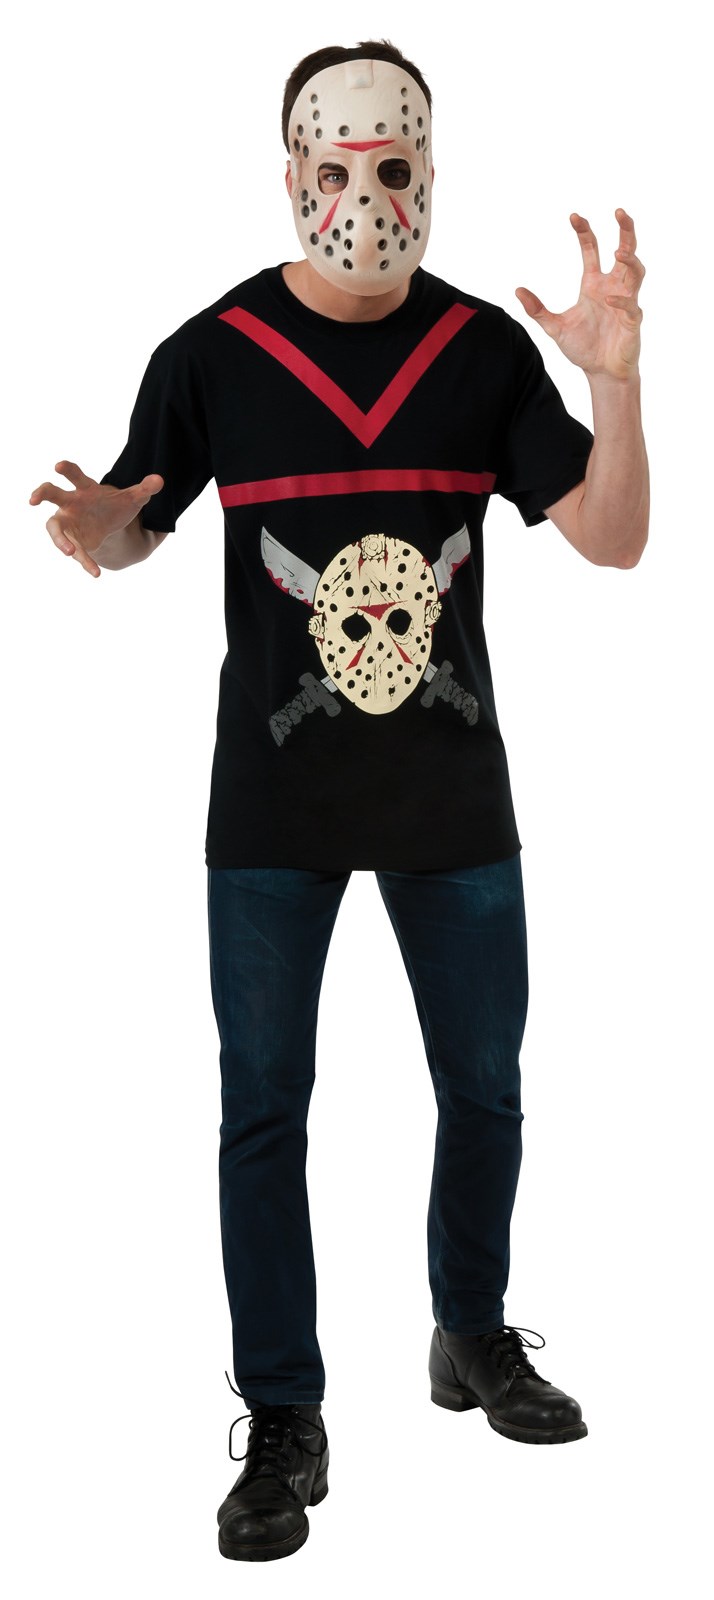 Jason Adult Costume Kit